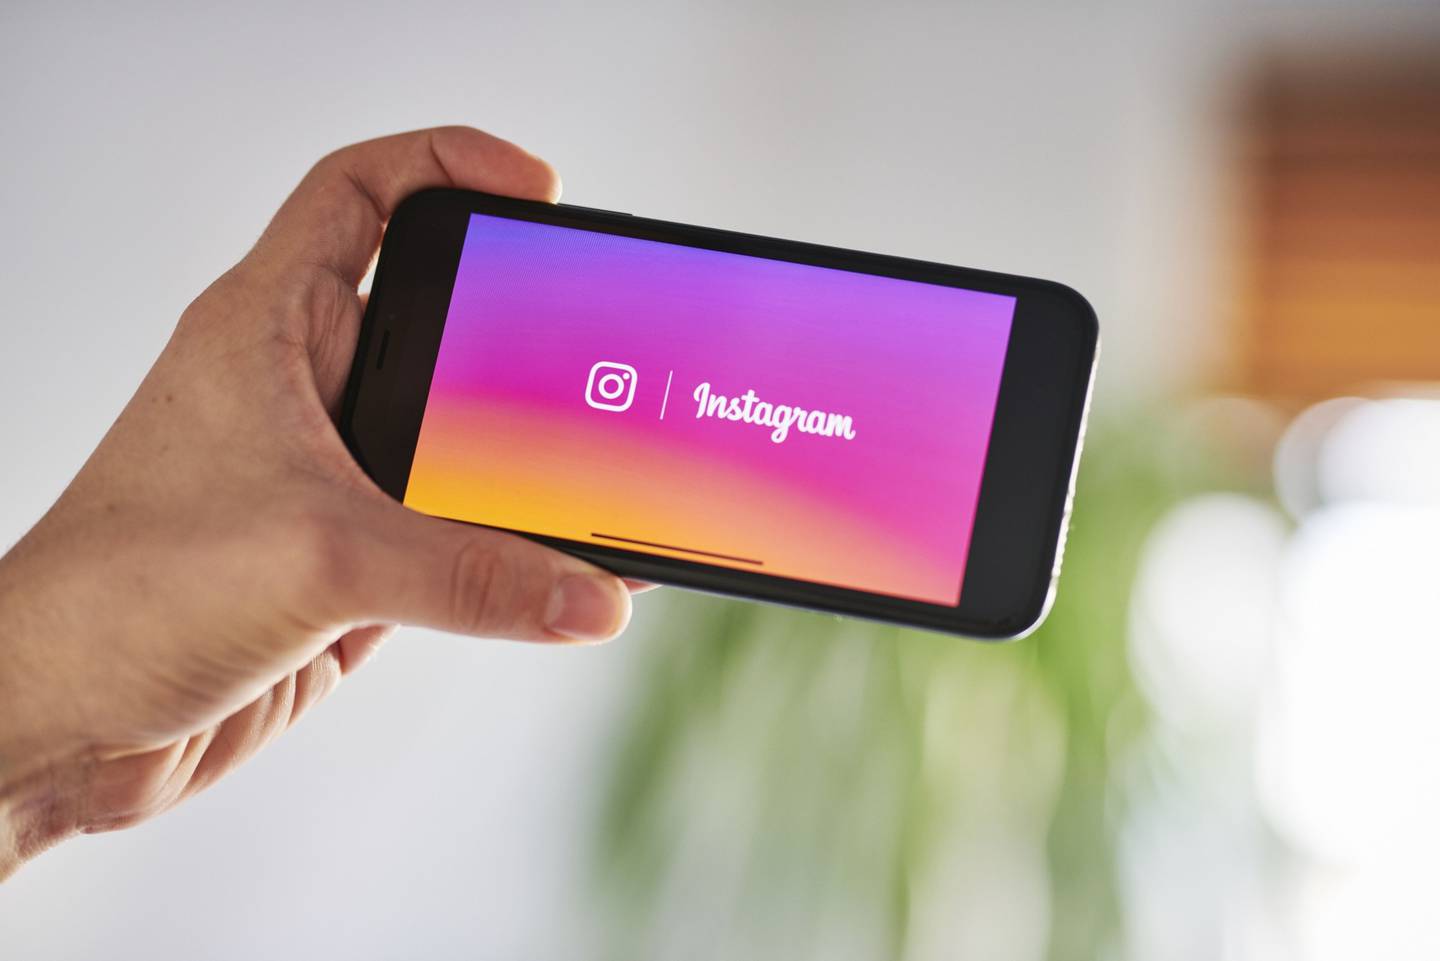 Señalización de Instagram se muestra en un iPhone